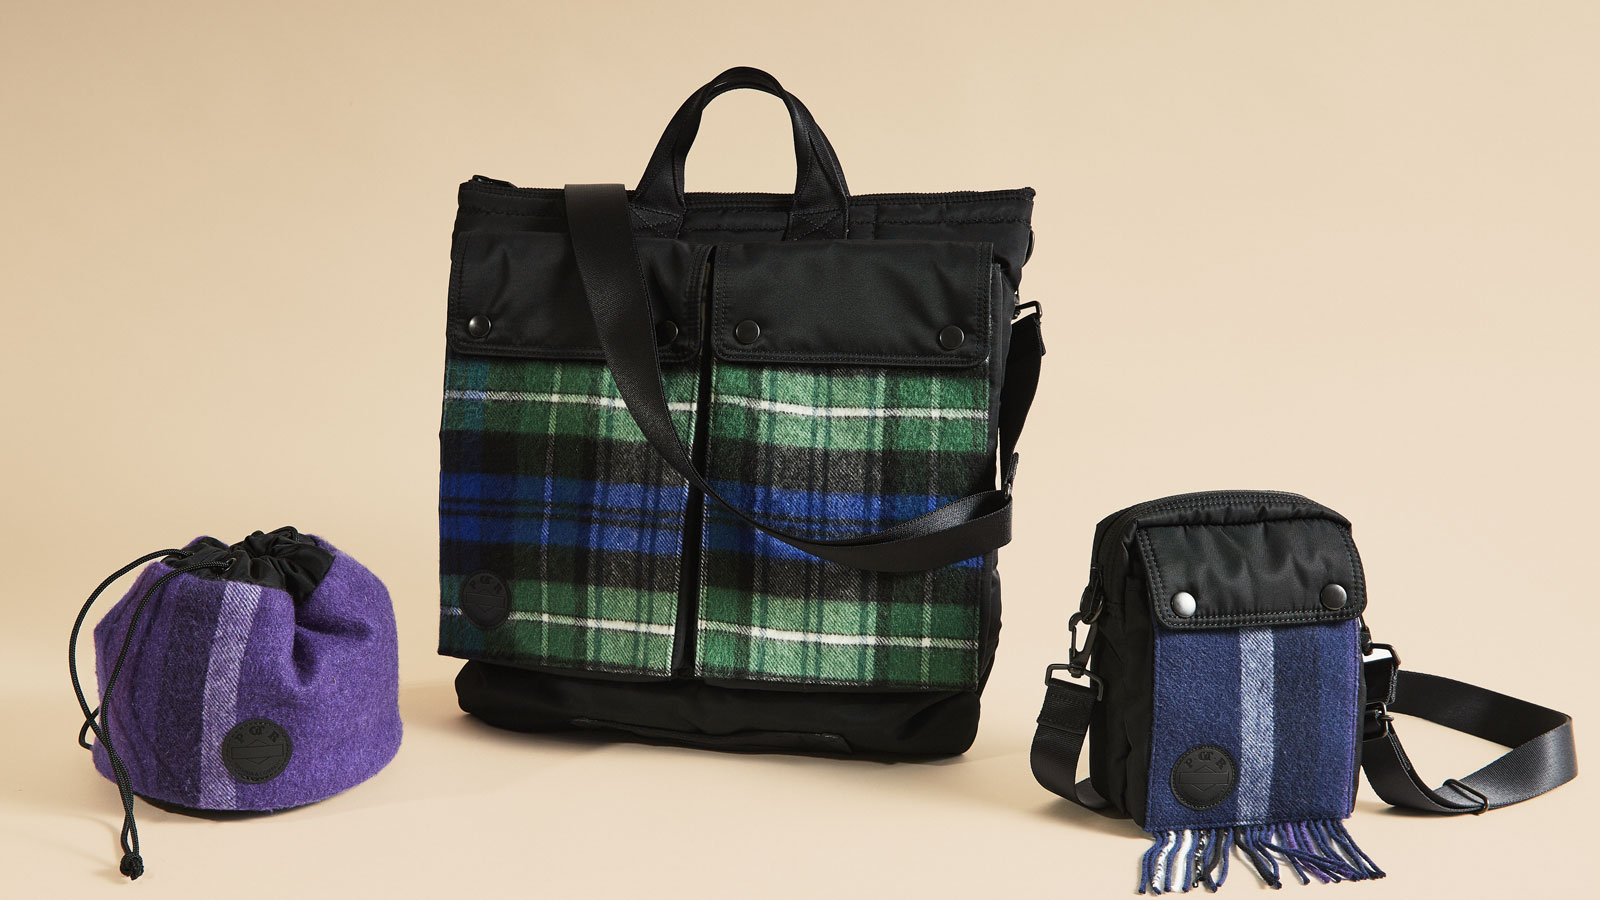 日本を代表する鞄メーカー「吉田カバン」の新たなブランド「POTR」と225周年を迎えるジョンストンズ オブ エルガンのコラボレーションアイテムが登場